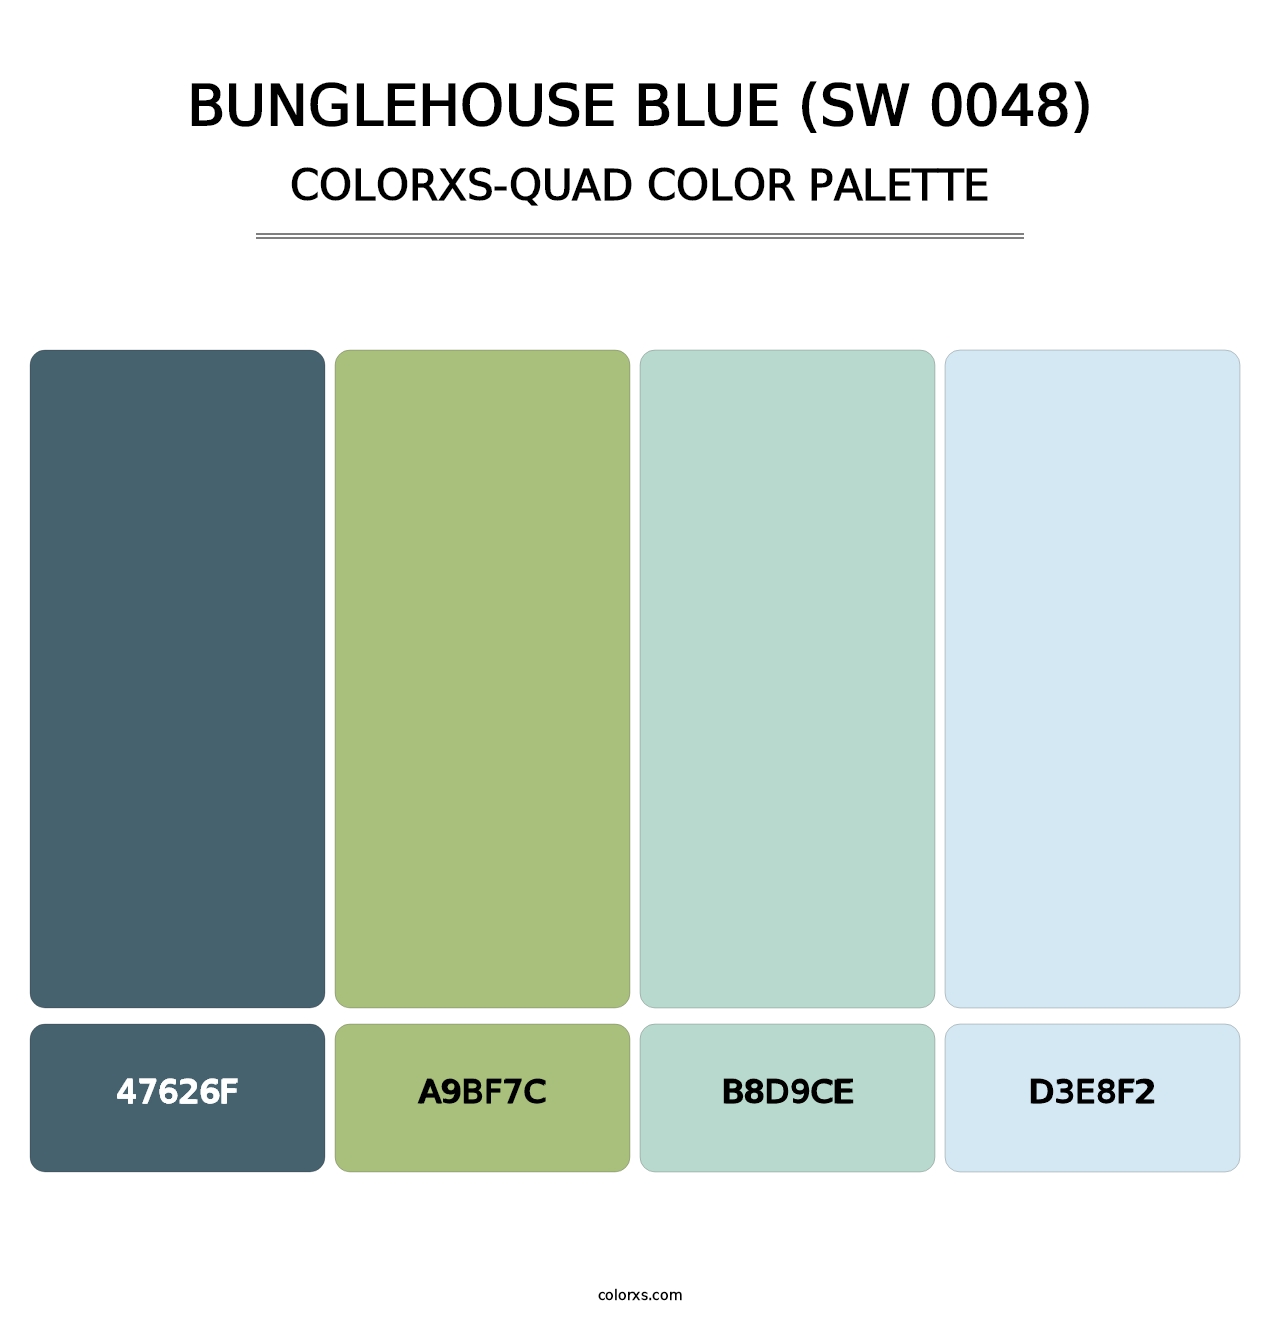 Bunglehouse Blue (SW 0048) - Colorxs Quad Palette